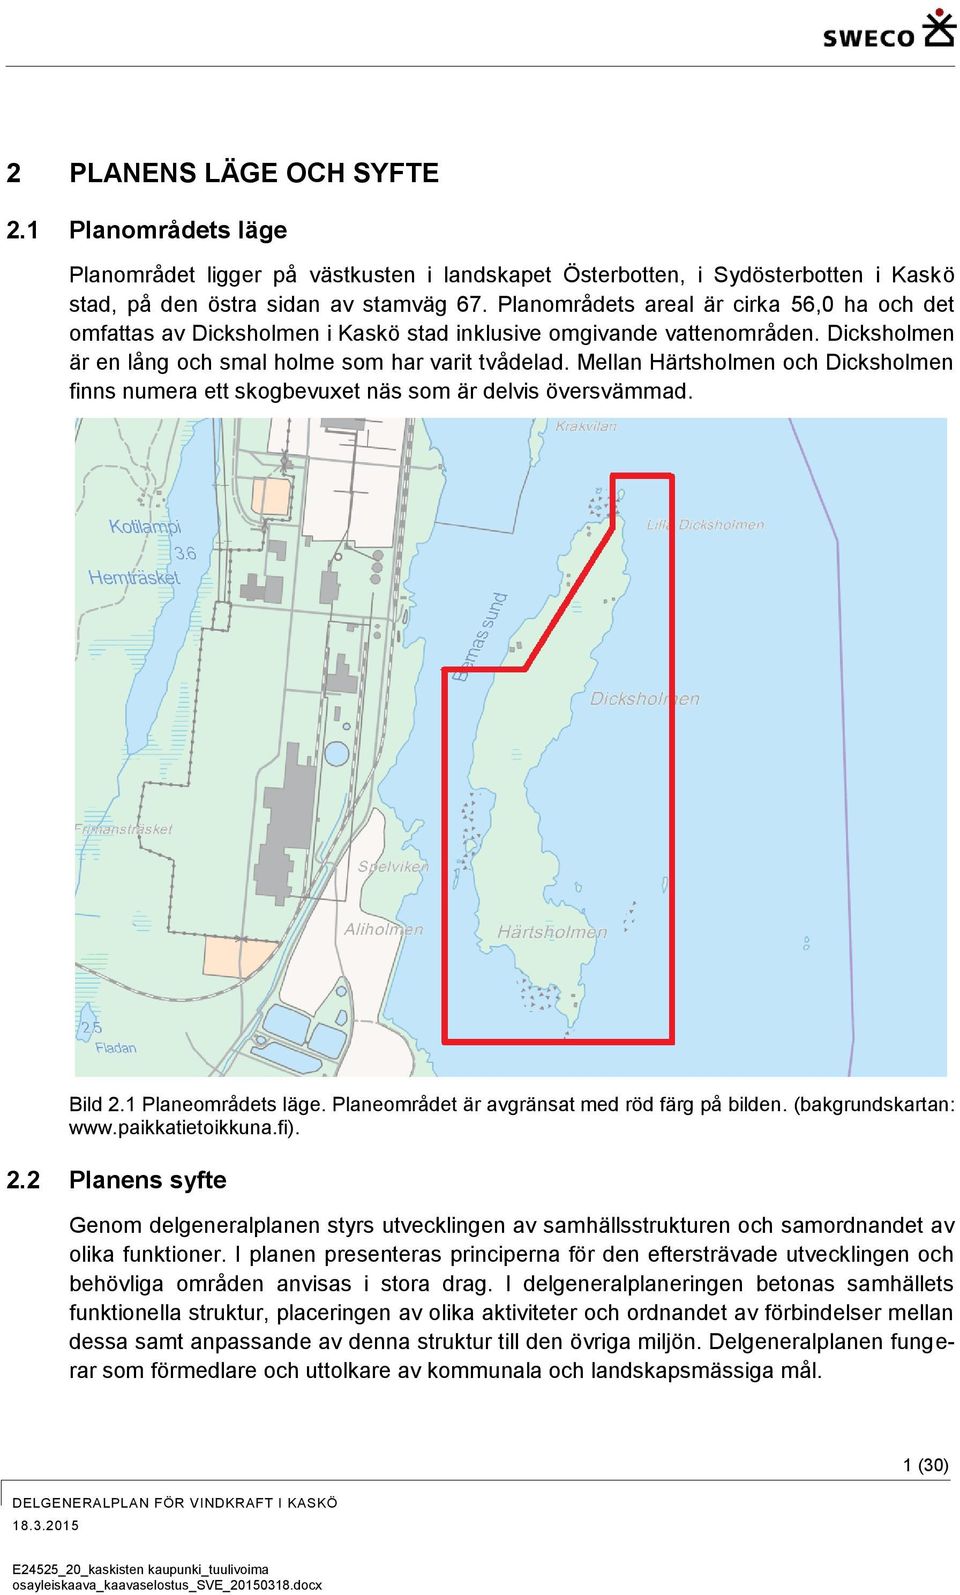 Mellan Härtsholmen och Dicksholmen finns numera ett skogbevuxet näs som är delvis översvämmad. Bild 2.1 Planeområdets läge. Planeområdet är avgränsat med röd färg på bilden. (bakgrundskartan: www.